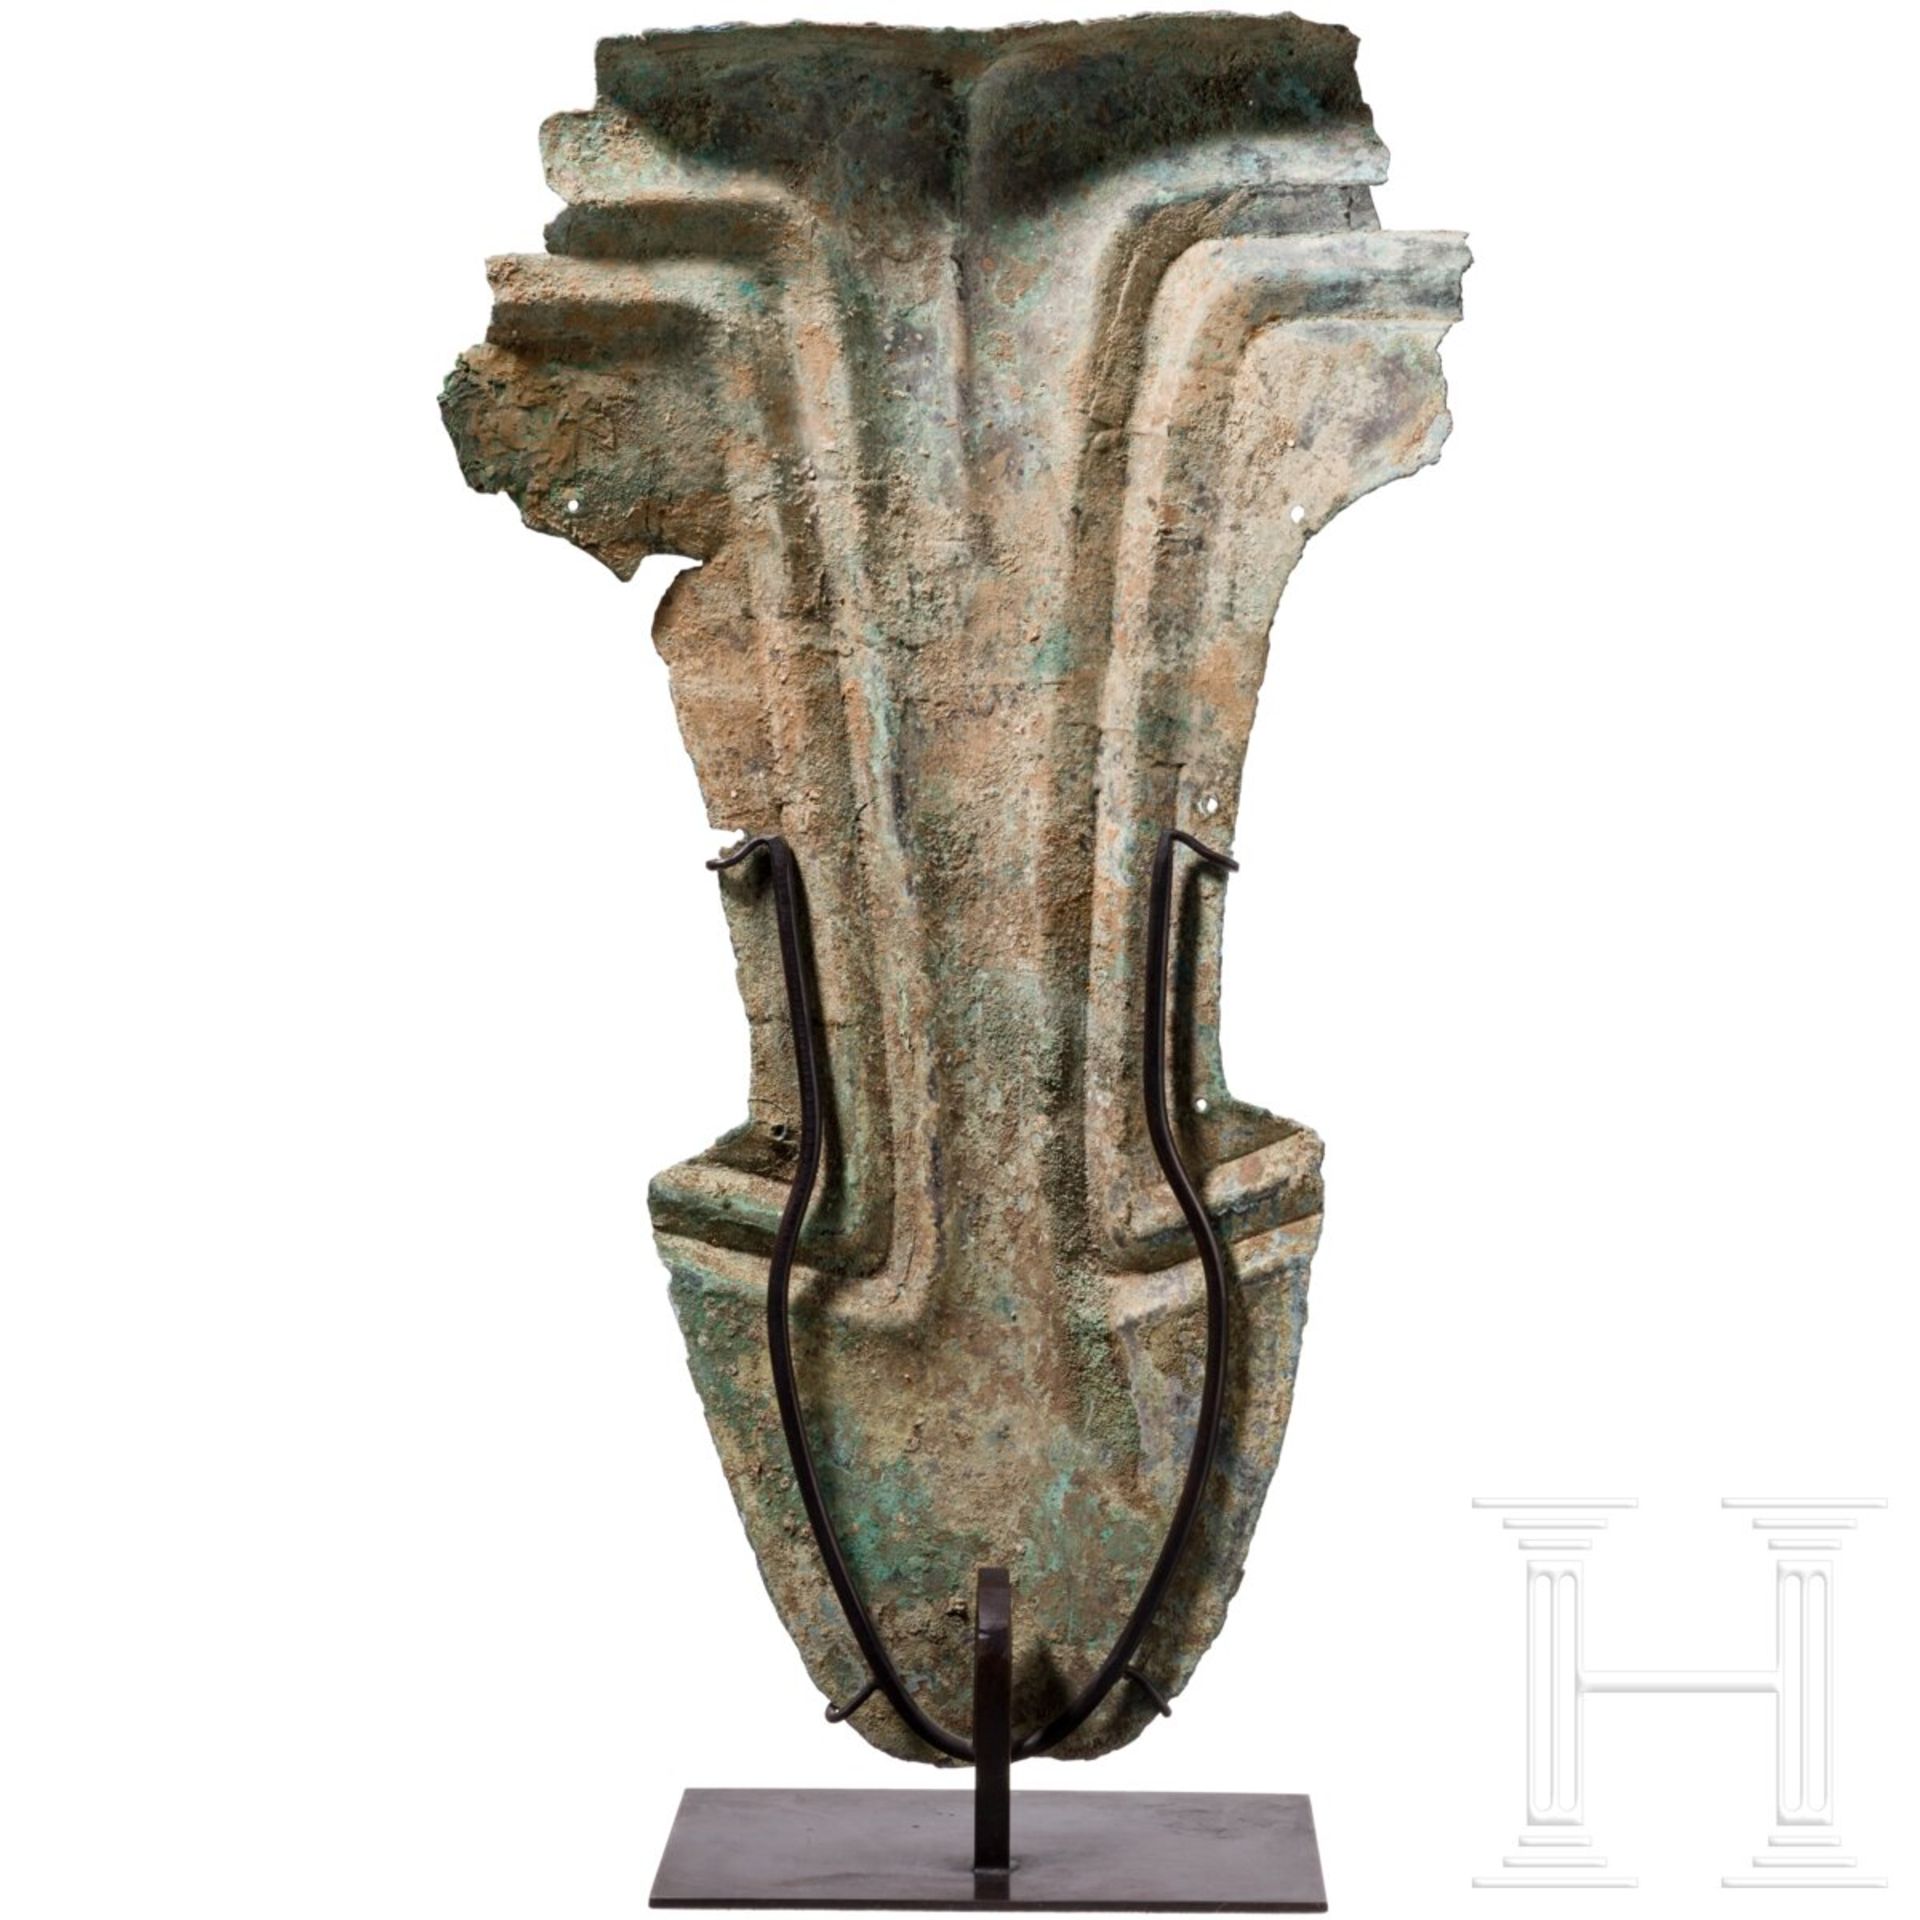 Seltene Rossstirn (Chamfron) aus Bronze, China, 11. - 8. Jhdt. v. Chr. - Bild 3 aus 6